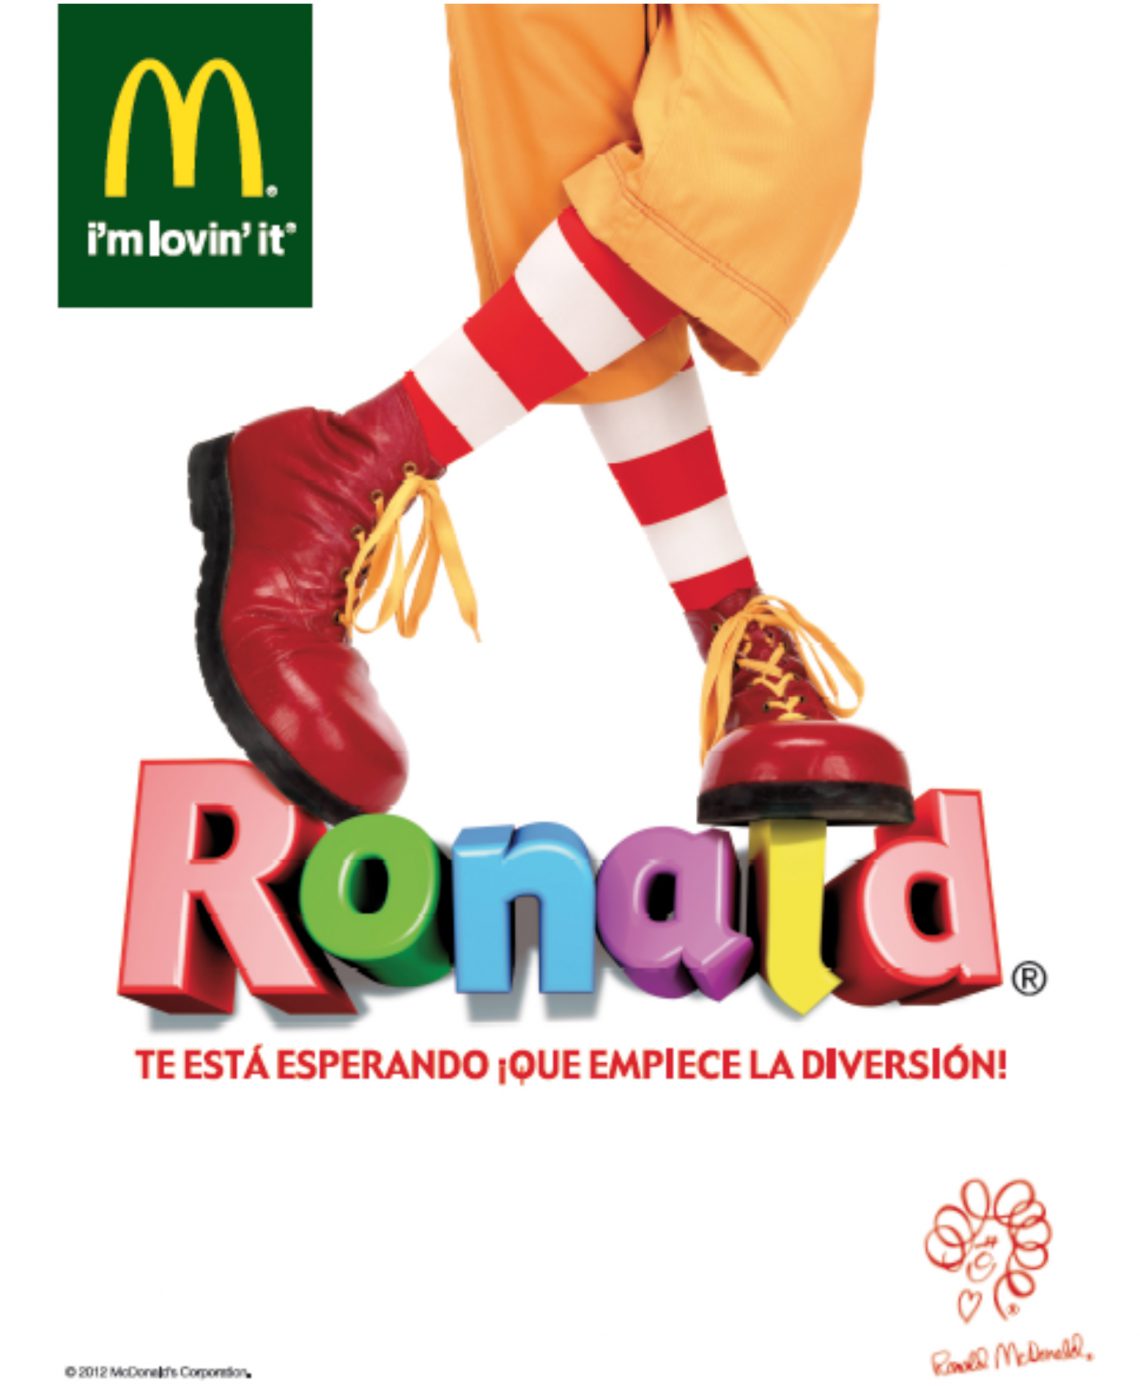 Ronald McDonald visitará el Centro de Atención Temprana de SERMESA